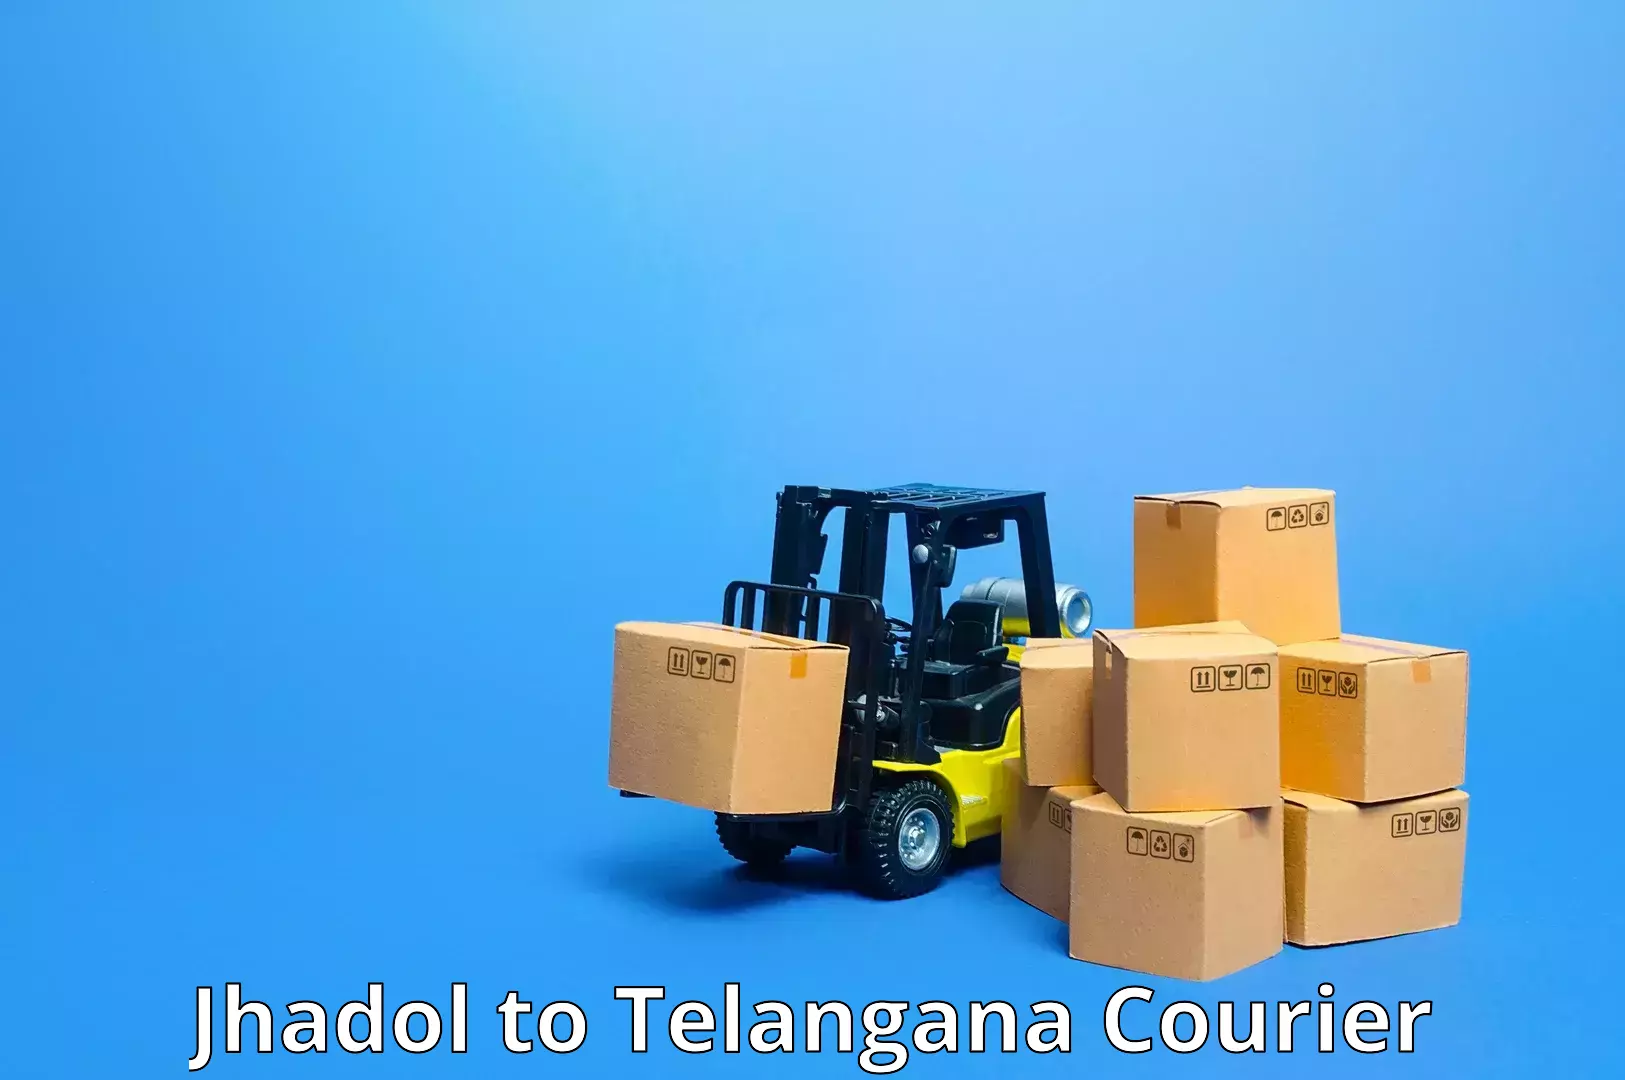 Premium courier services Jhadol to Bhuvanagiri